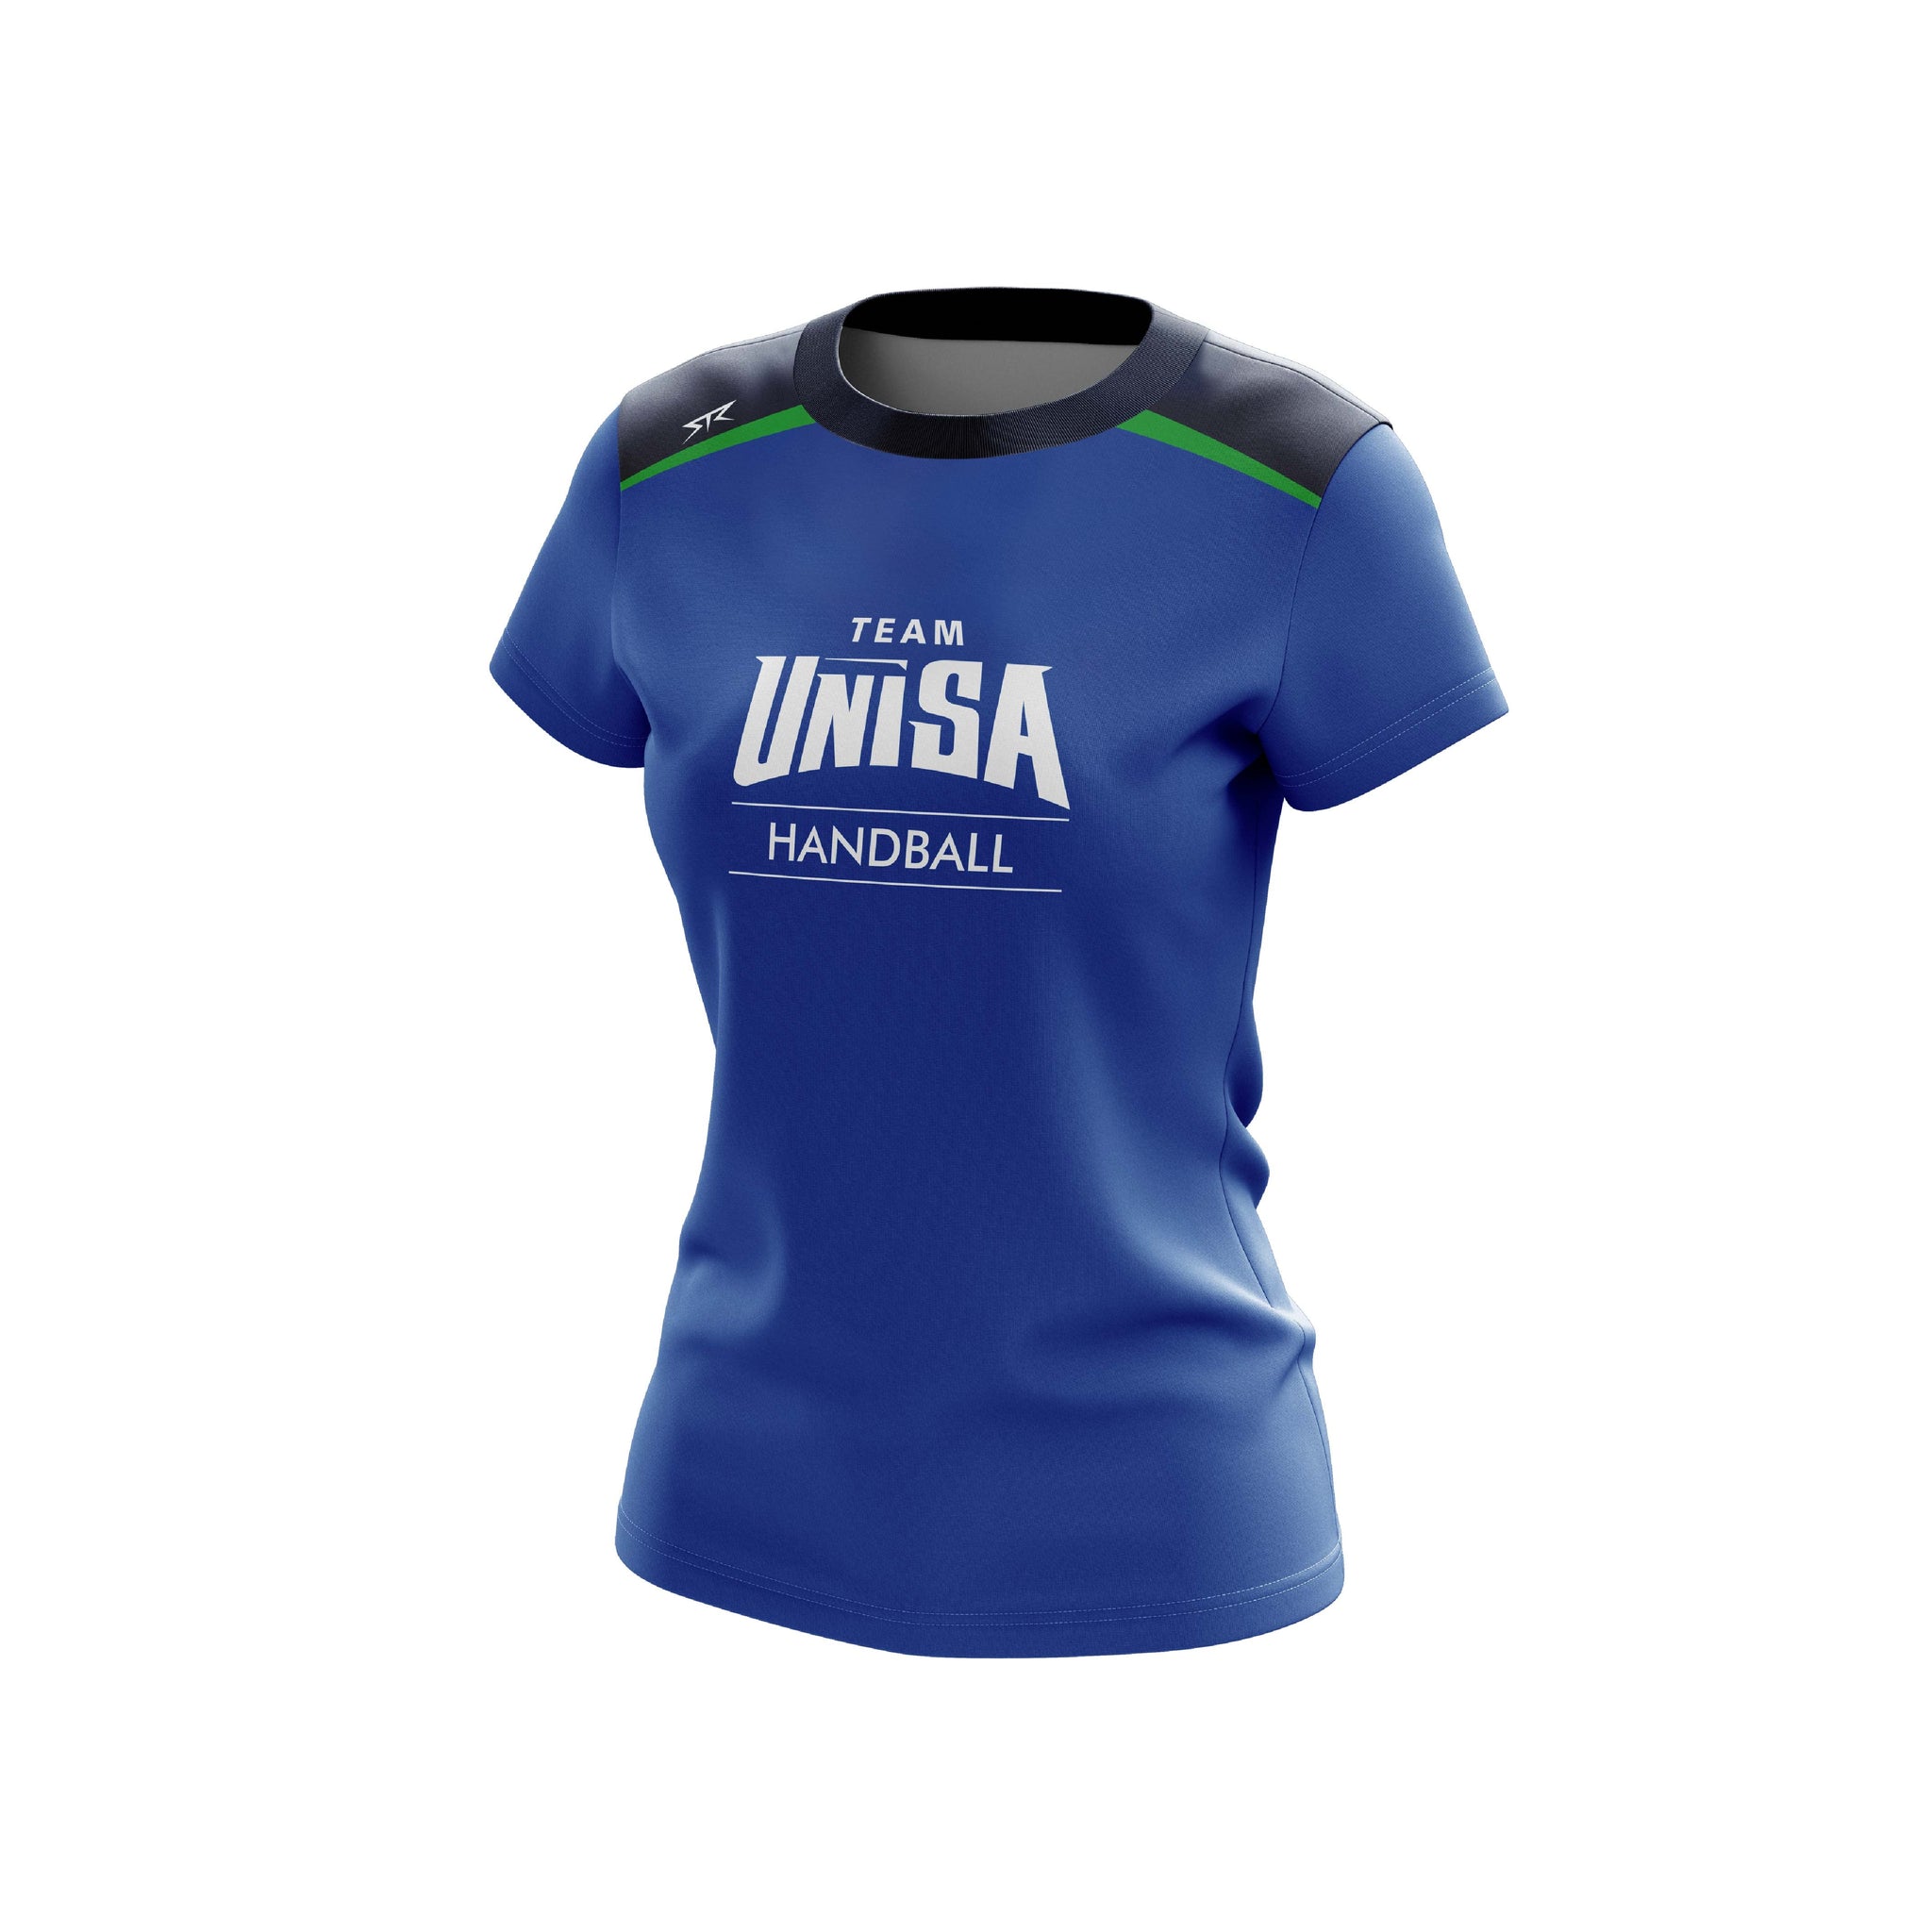 UniSA Handball Women's Training Shirt